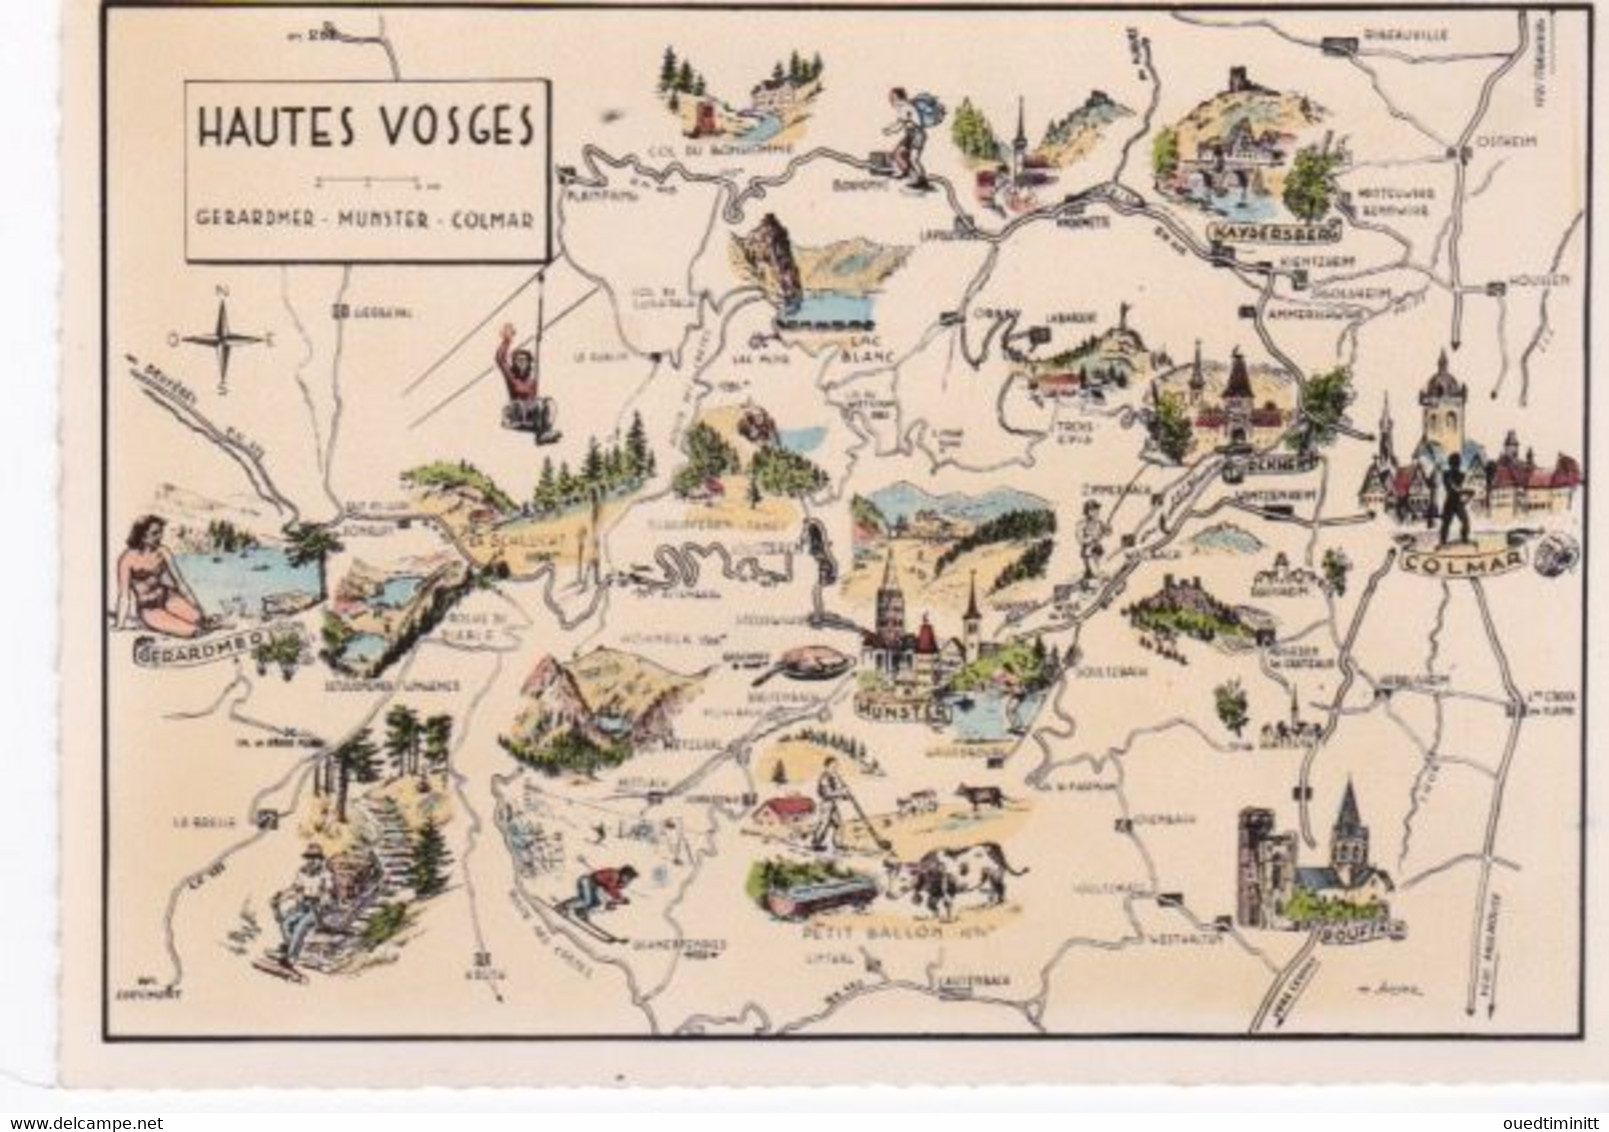 Carte Géographique Des Hautes Vosges, Gerardmer, Munster, Colmar, Cpsm Dentelée - Carte Geografiche